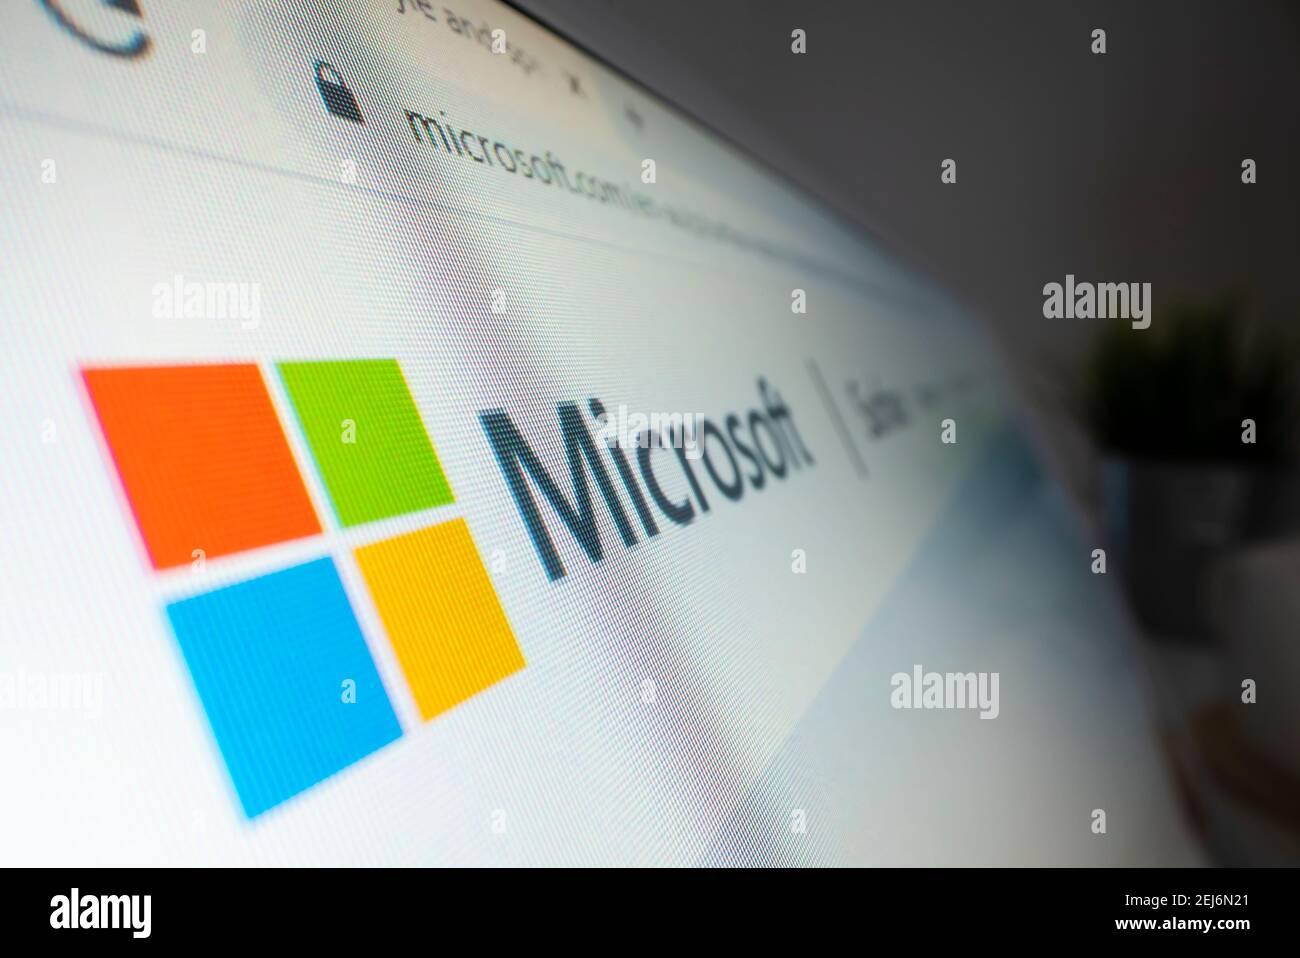 Visualizzazione ravvicinata del logo Microsoft sul proprio sito Web Foto Stock